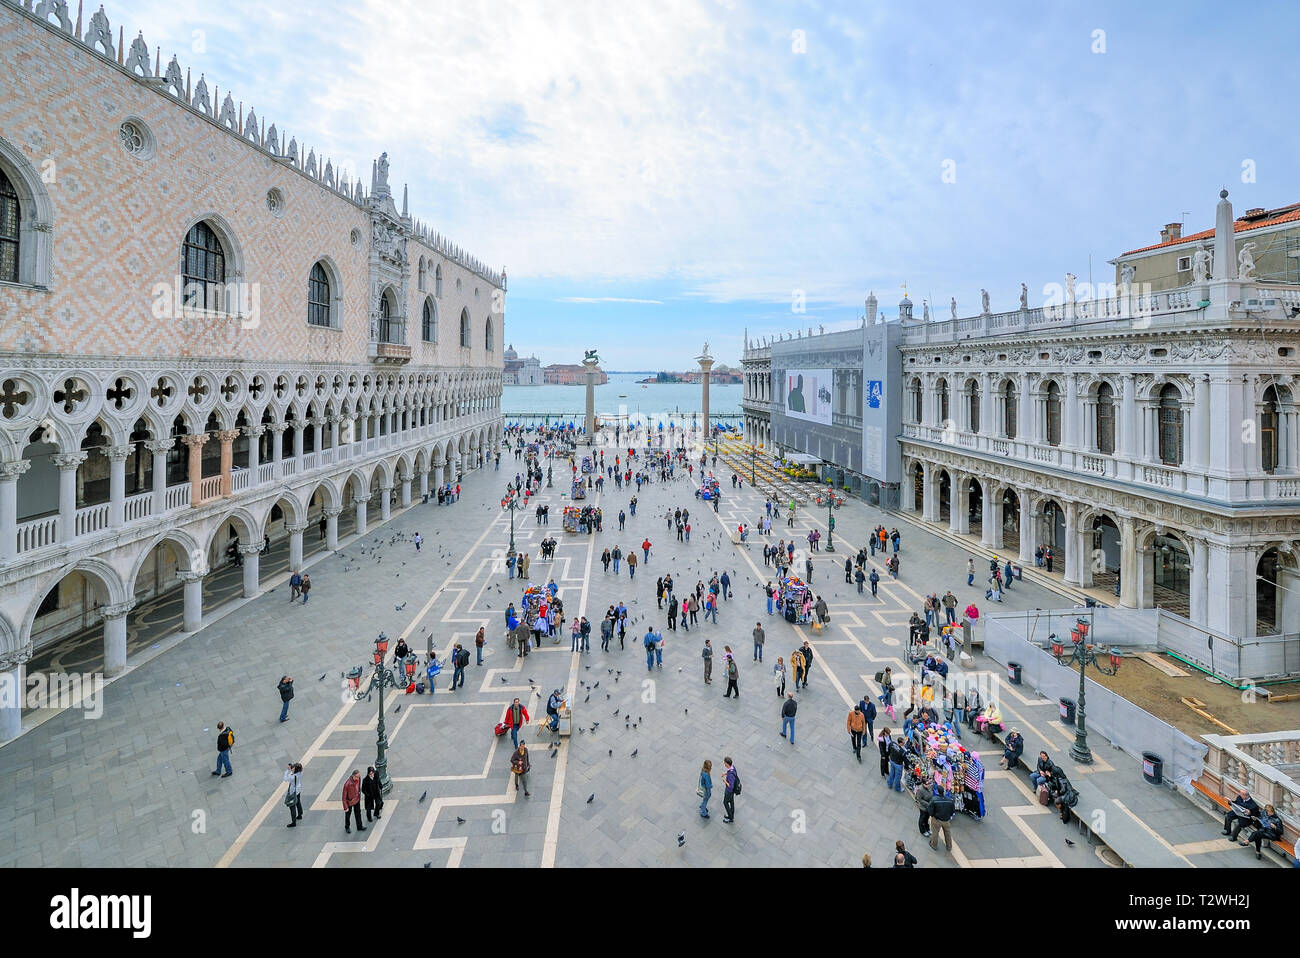 Italia, Veneto, Venecia, la gente en la plaza de San Marcos, el Palacio Ducal de la izquierda Foto de stock